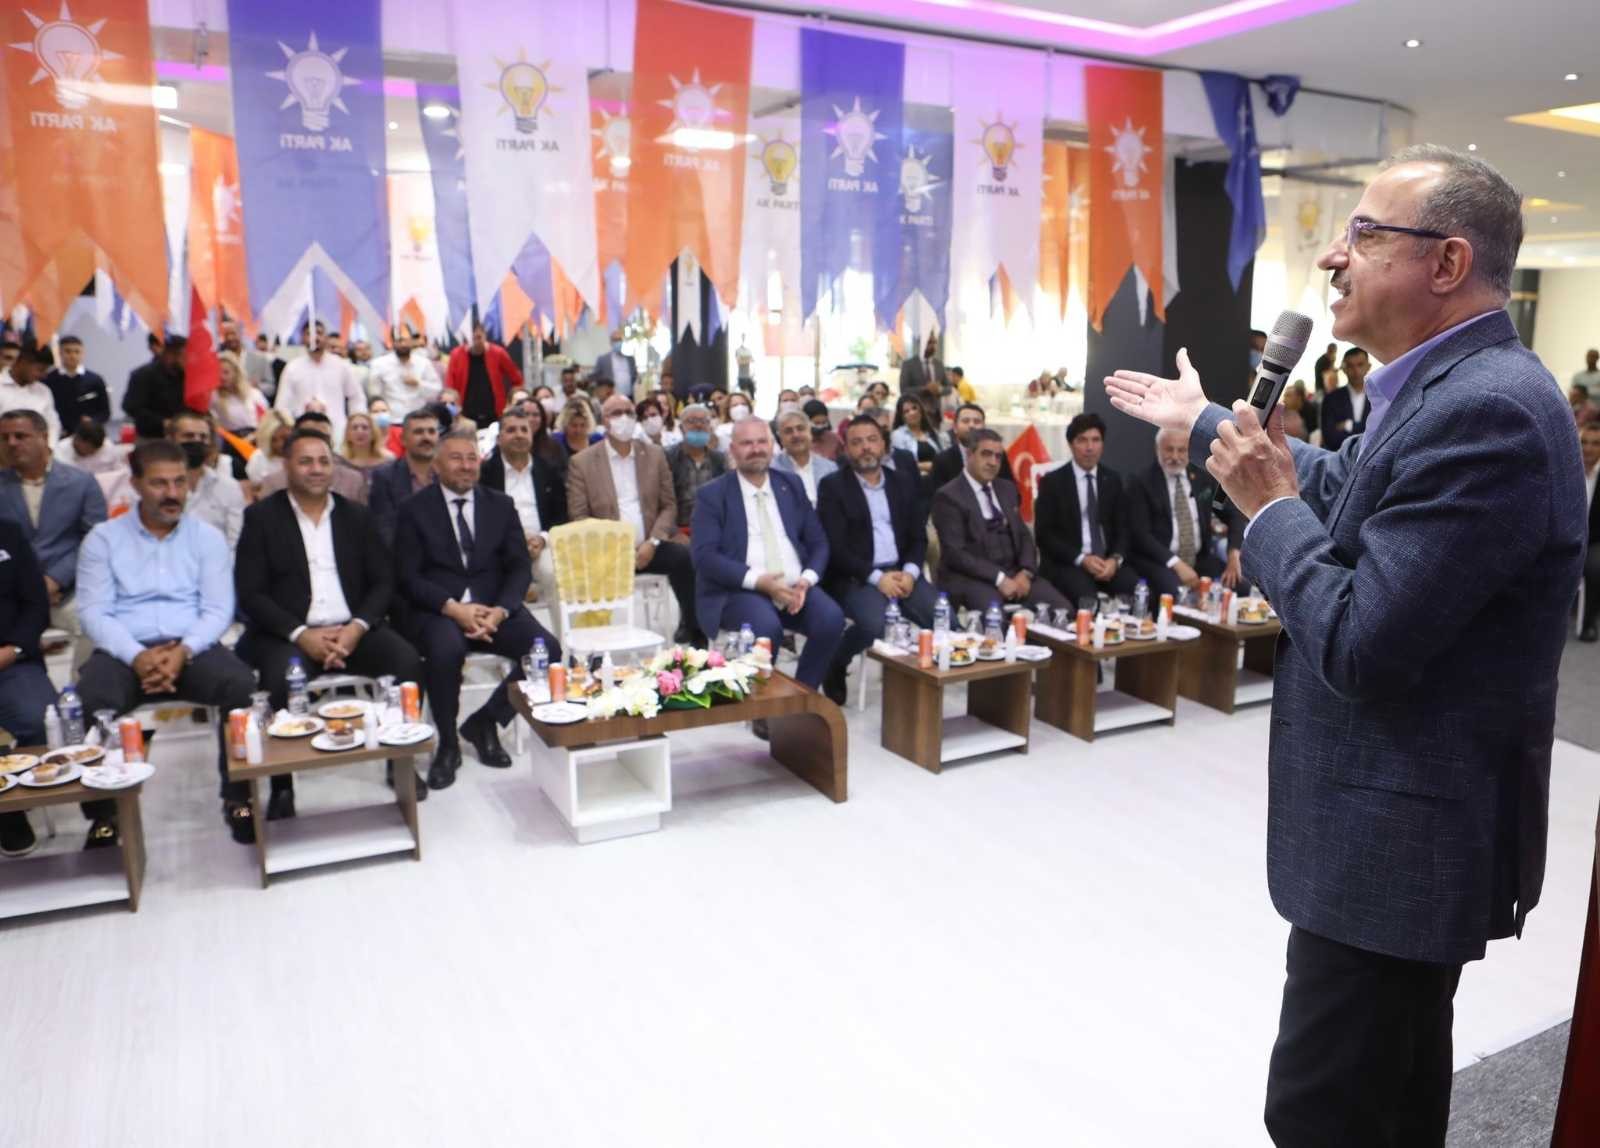 İzmir AK Parti’den 30 ilçede eş zamanlı danışma meclisi toplantıları #izmir